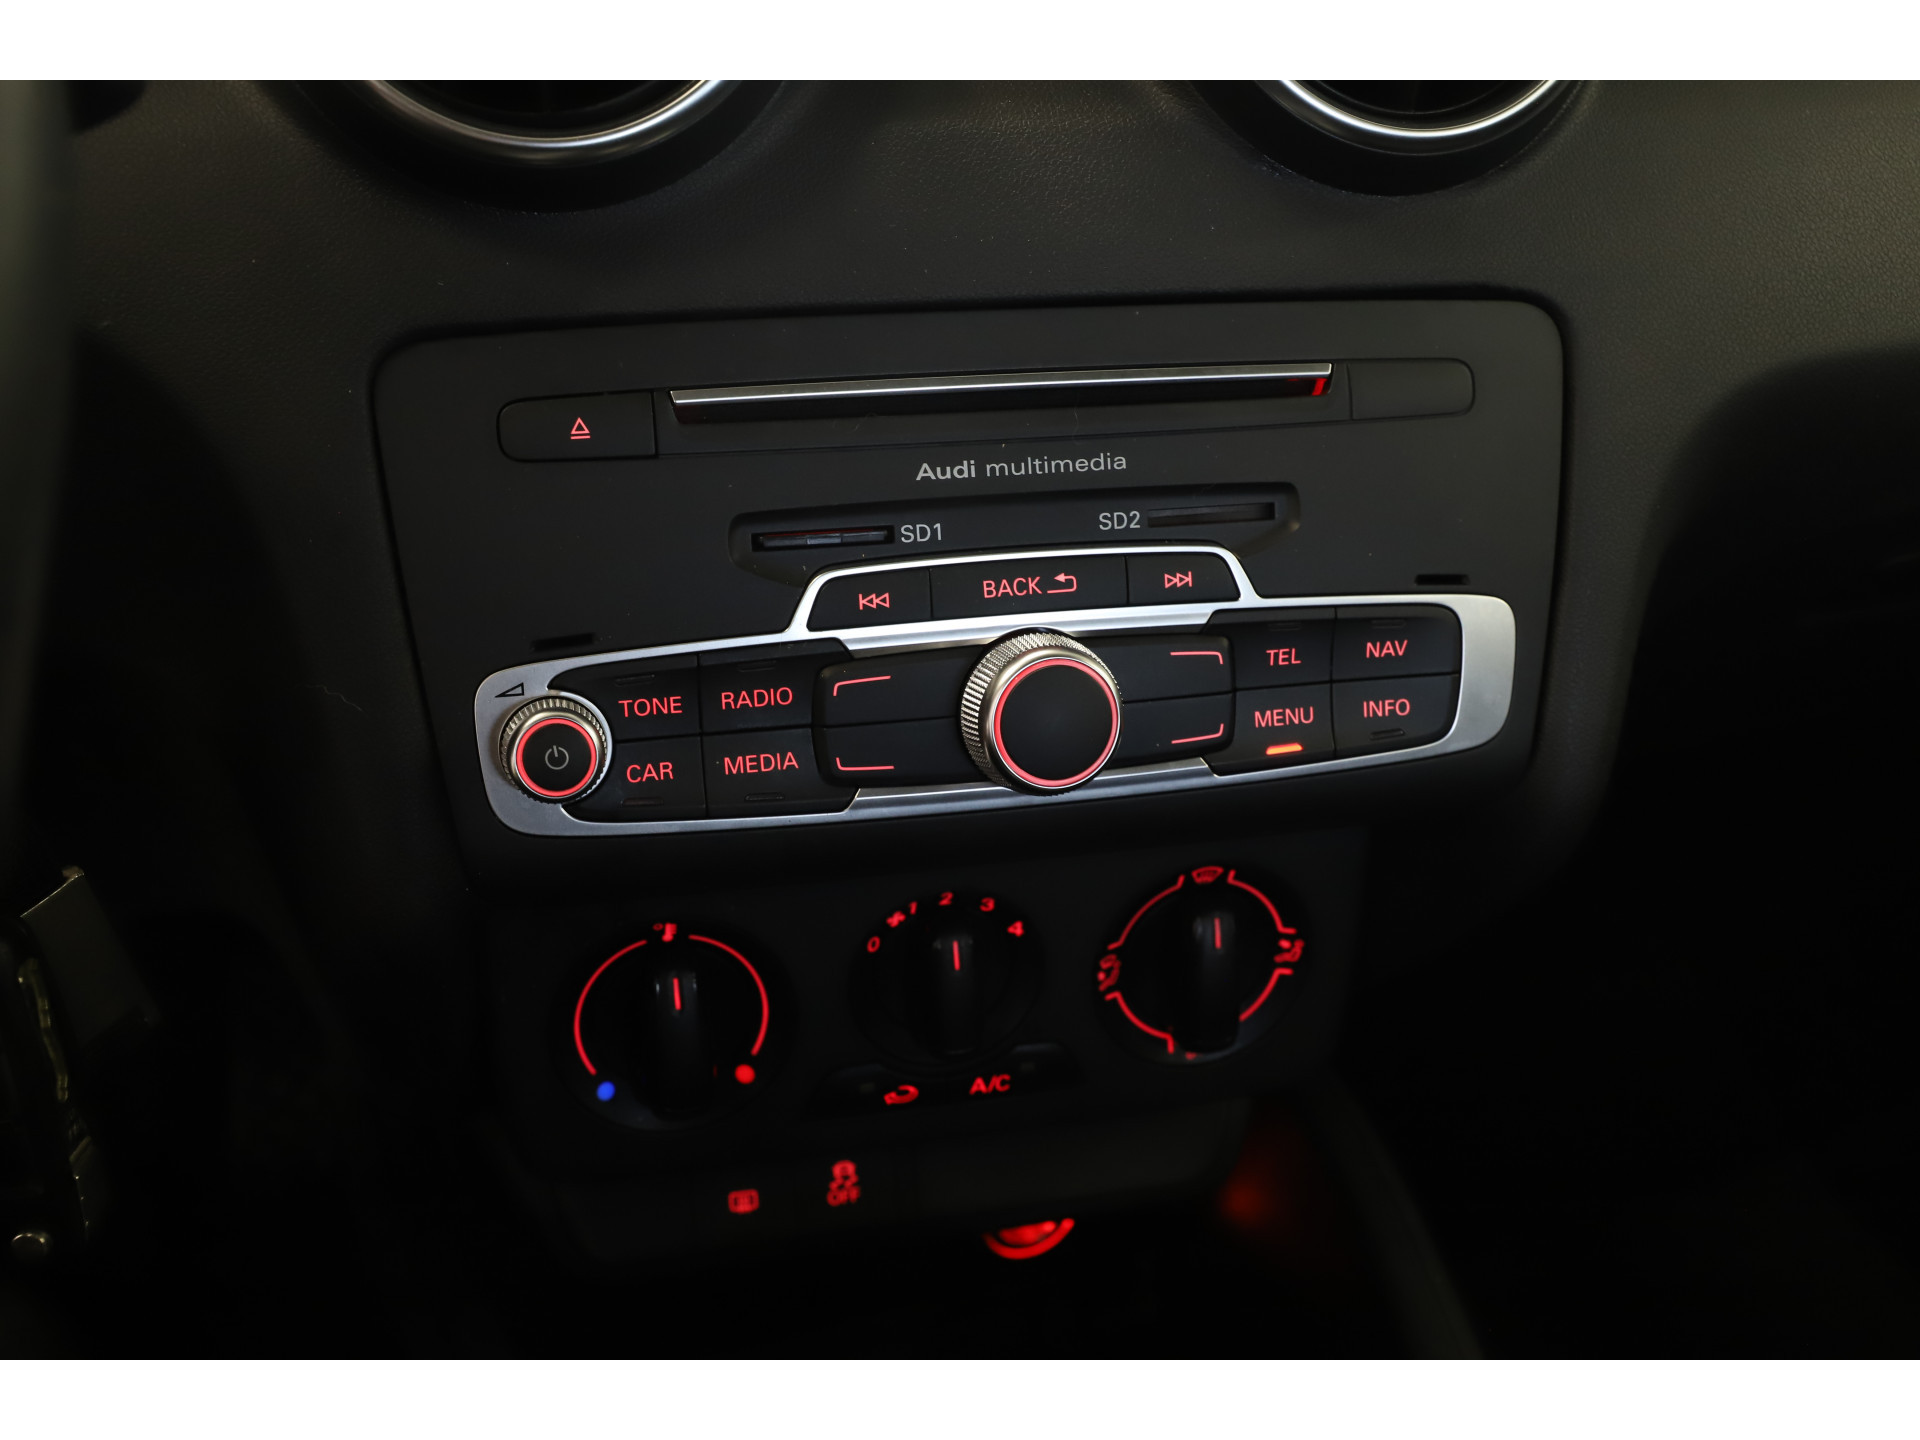 Audi - A1 Sportback 1.0 TFSI 95pk Adrenalin S-Line - 2017